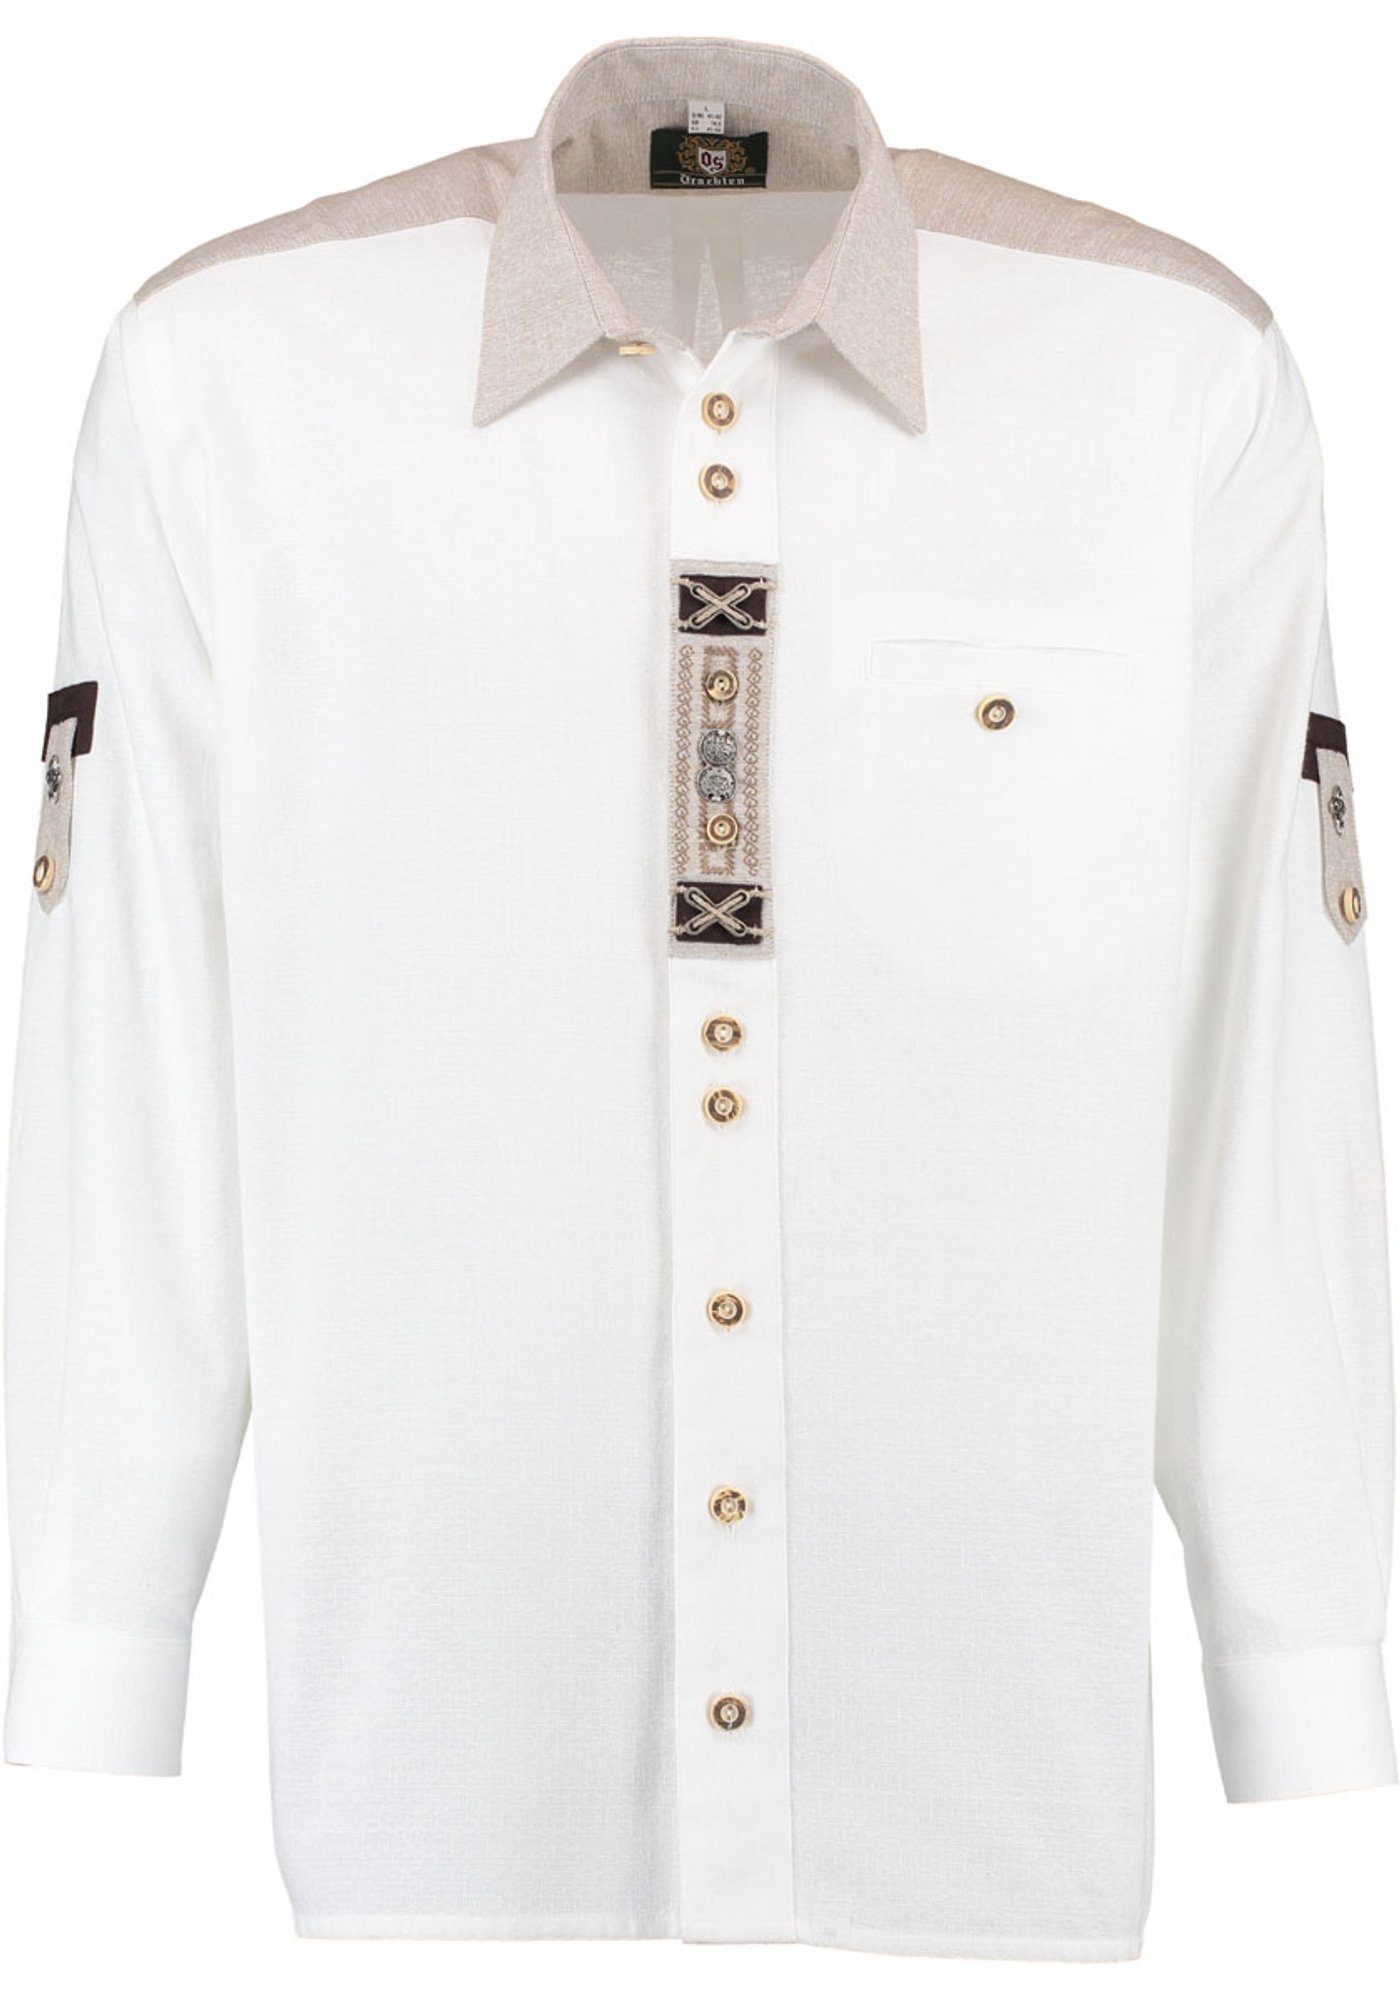 OS-Trachten Trachtenhemd Nvoion Langarmhemd mit Paspeltasche, Zierteile auf der Knopfleiste weiß